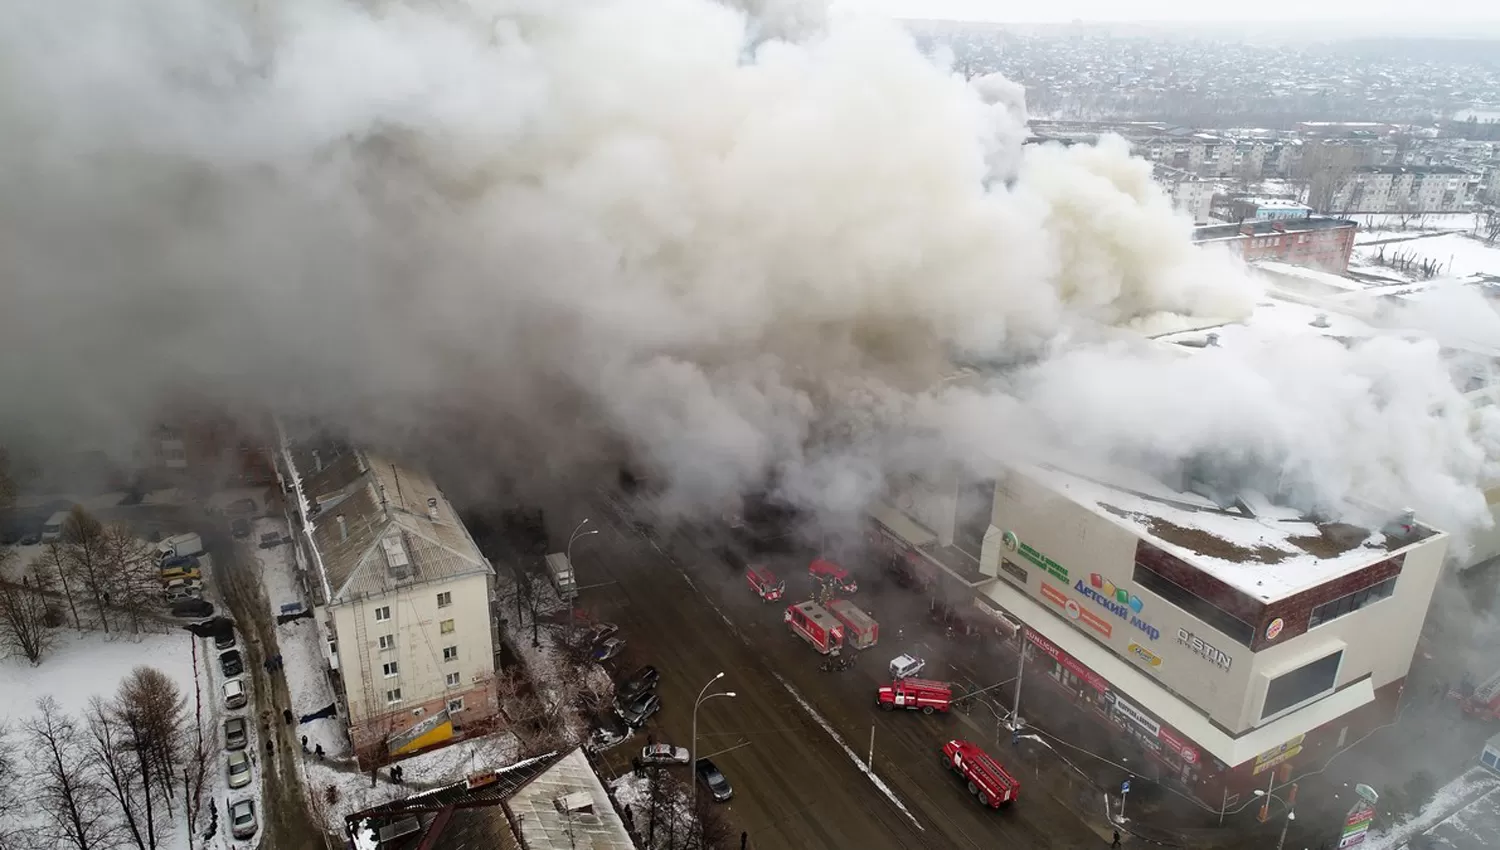 Humo. Más de 50 vehículos de bomberos trabajaron para controlar el fuego en el centro comercial de Kemerovo, en Siberia. /AP. FOTO TOMADA DE CLARÍN.

